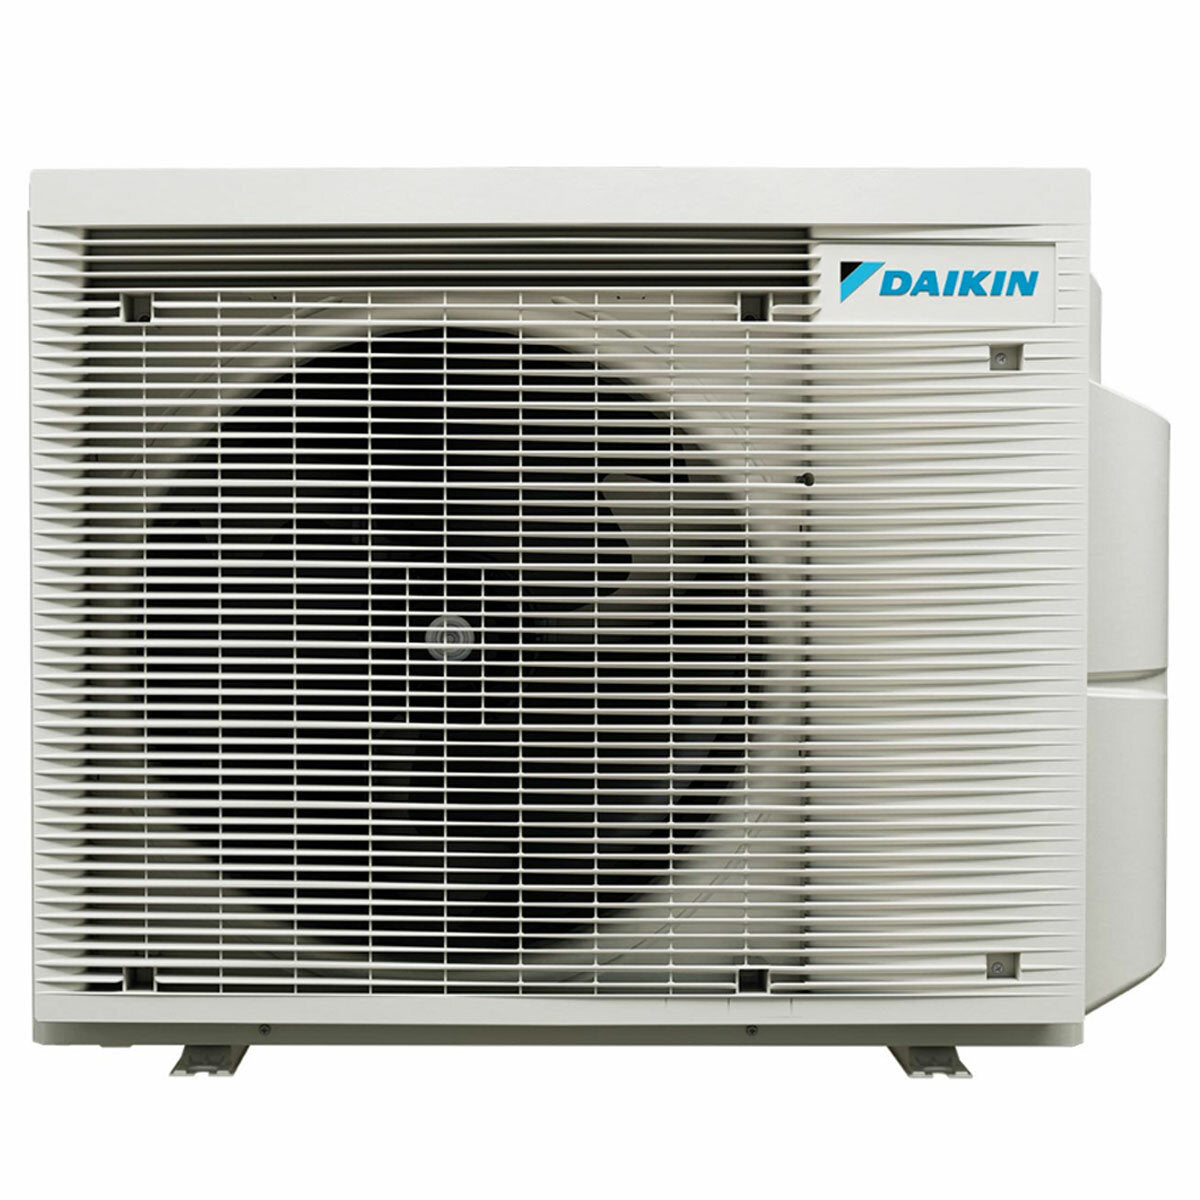 Daikin Emura 3 trial split air conditioner 9000+9000+18000 BTU inverter A+ wifi outdoor unit 6.8 kW White